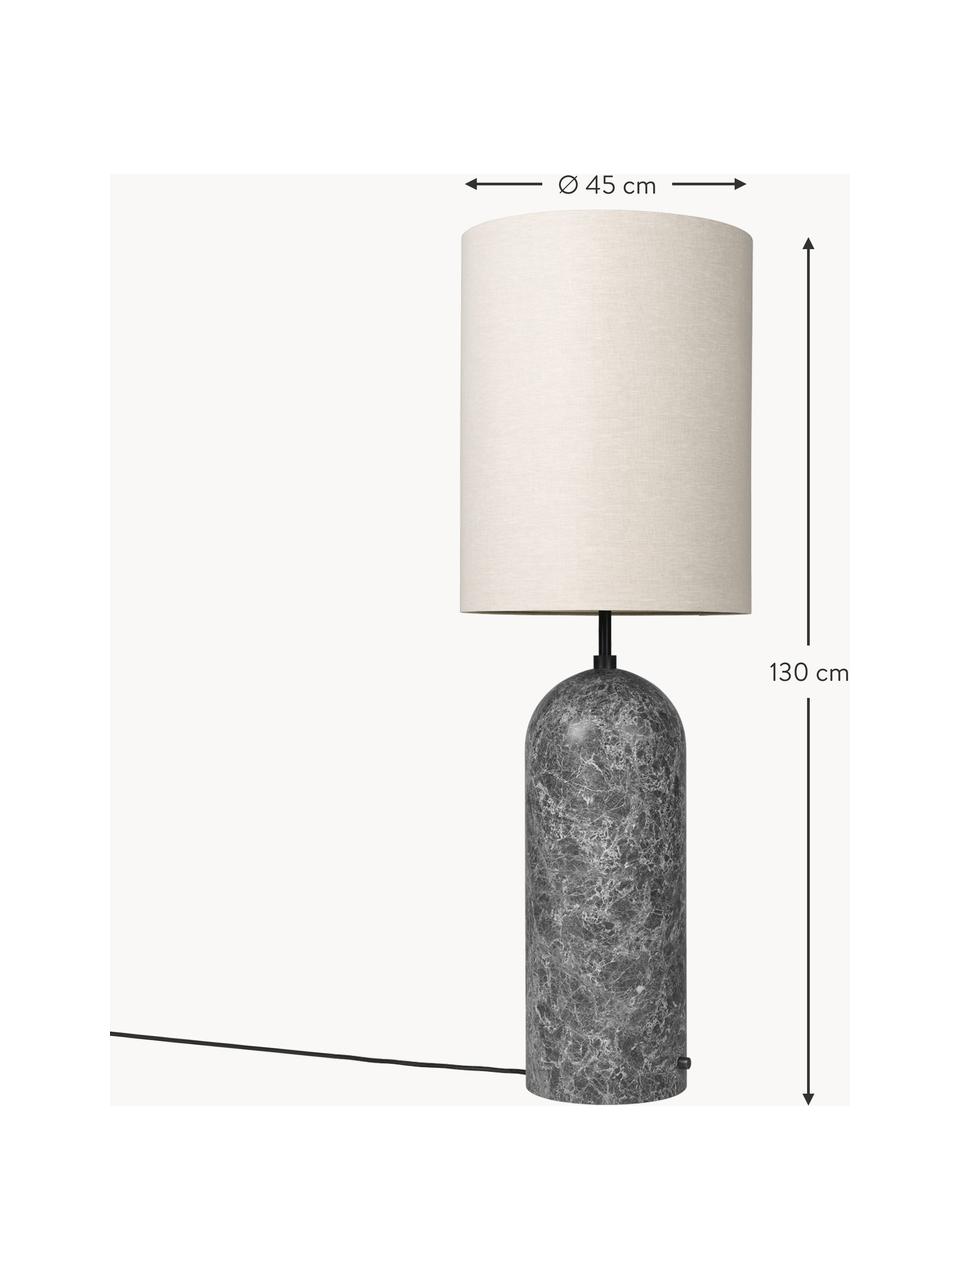 Kleine dimmbare Stehlampe Gravity mit Marmorfuss, Lampenschirm: Stoff, Hellbeige, Dunkelgrau marmoriert, H 130 cm